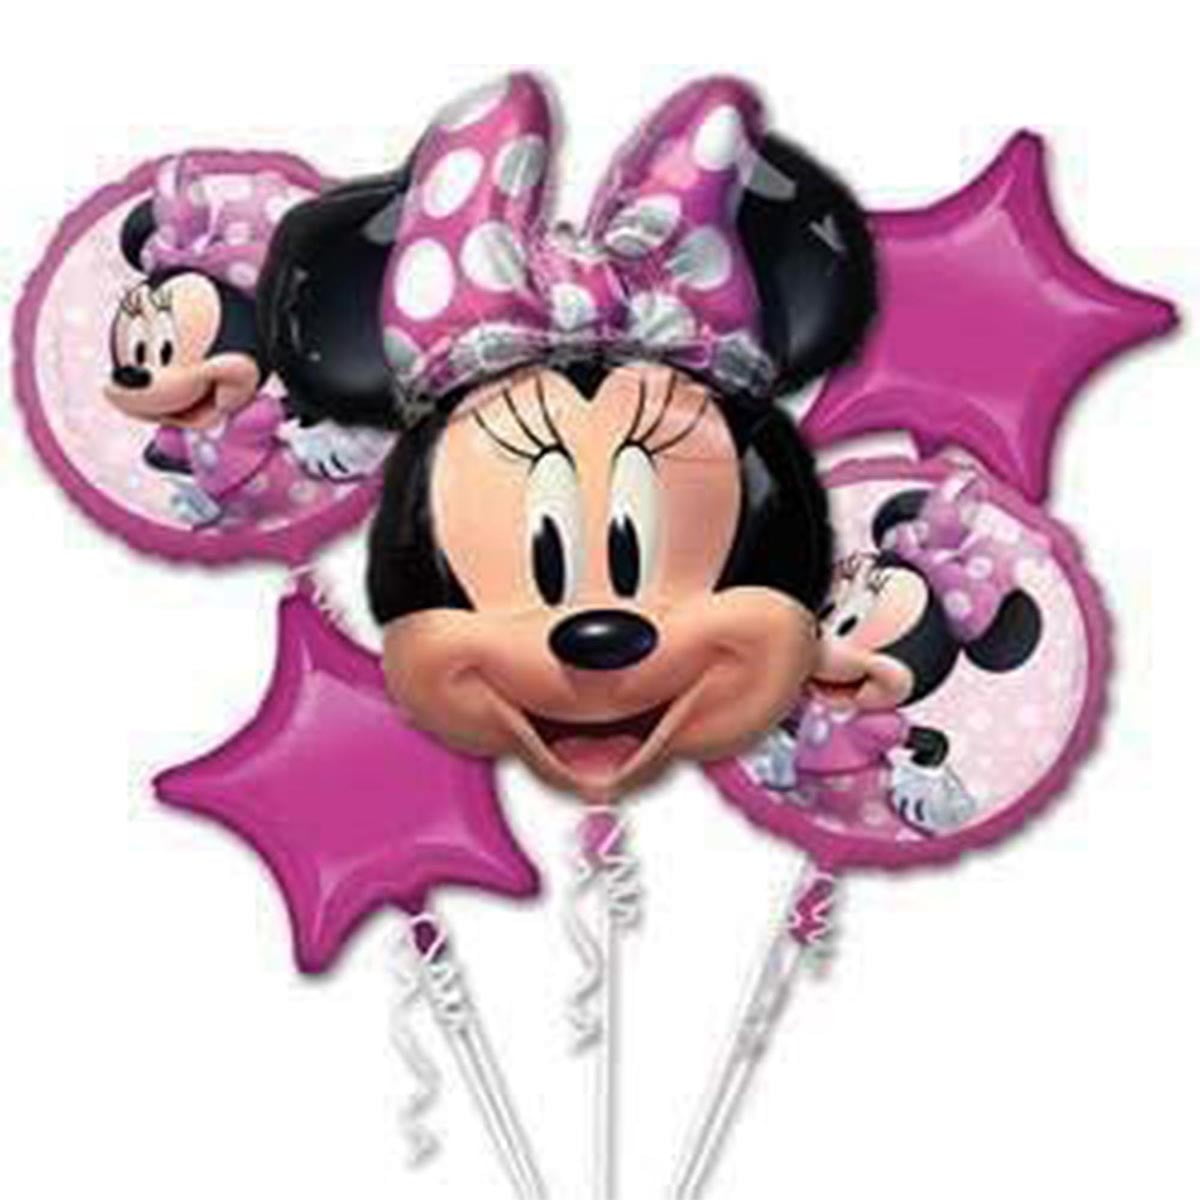 Standard Minnie Maus Forever Folienballon S60 verpackt - PITTSBALLOON, 3,95  €